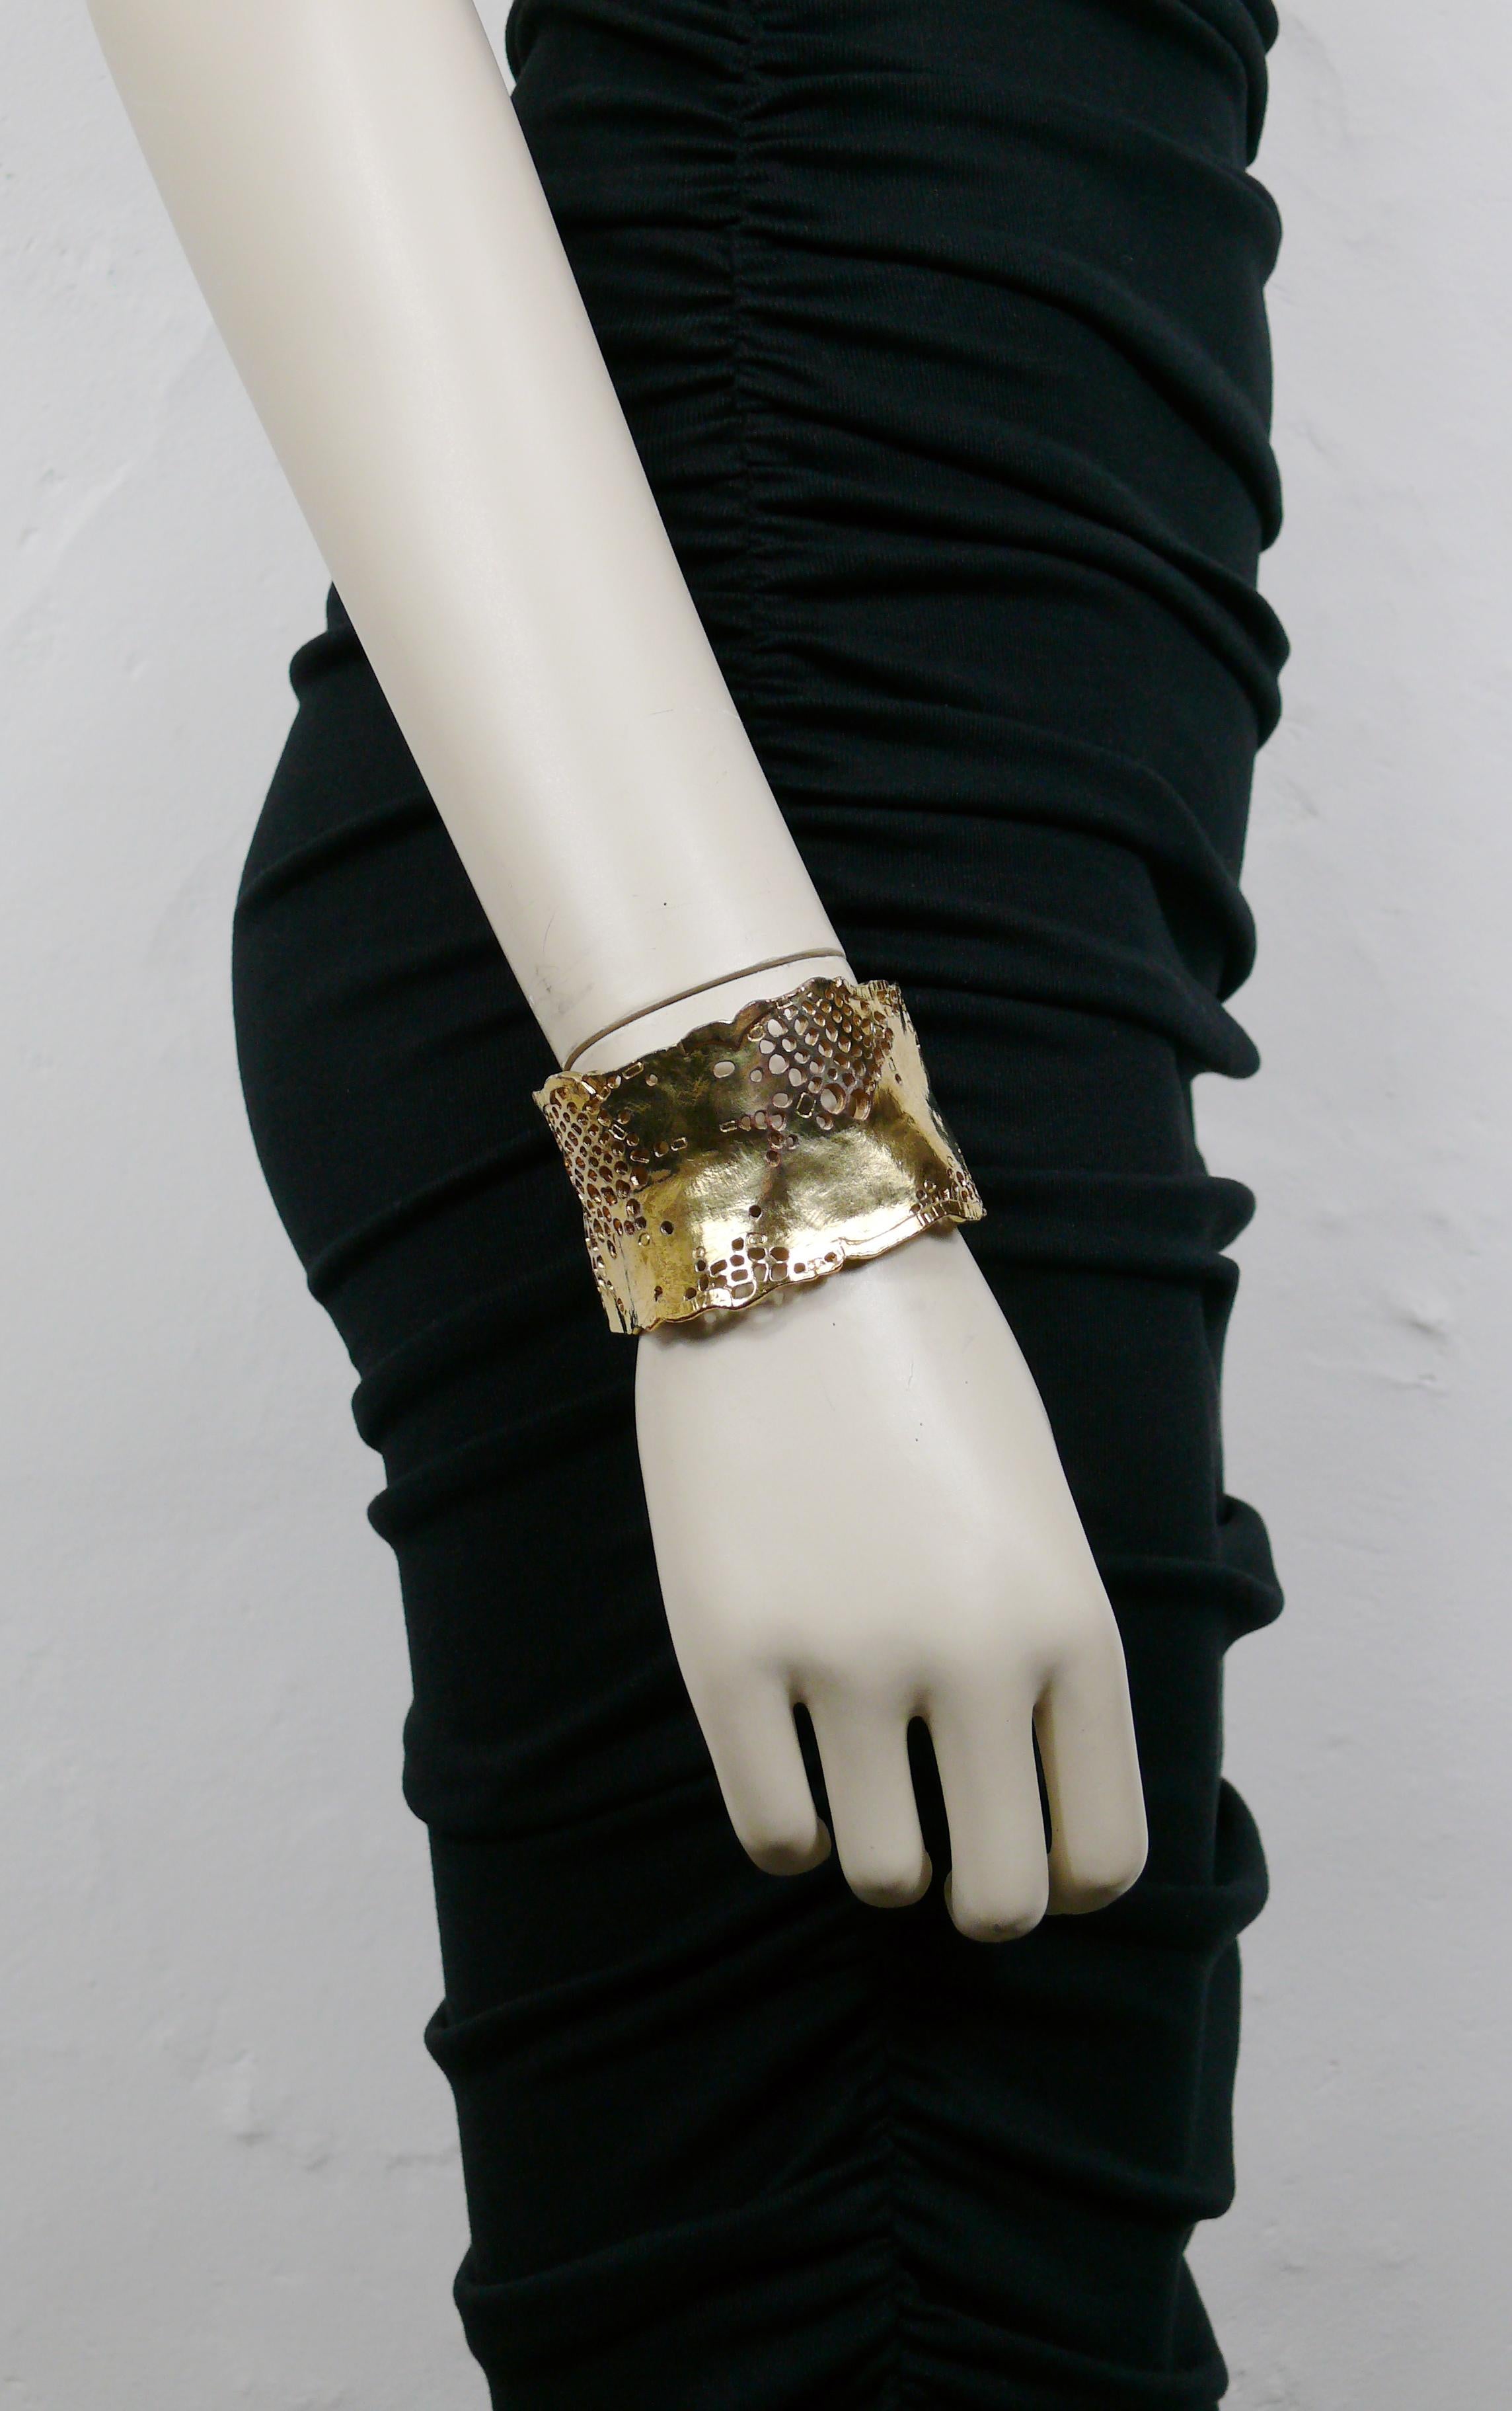 Le bracelet CHRISTIAN LACROIX est un bracelet de manchette vintage en or, perforé.

Marqué CHRISTIAN LACROIX CL Made in France.

Mesures indicatives : circonférence intérieure minimale d'environ 16,34 cm (6.43 inches) / largeur maximale d'environ